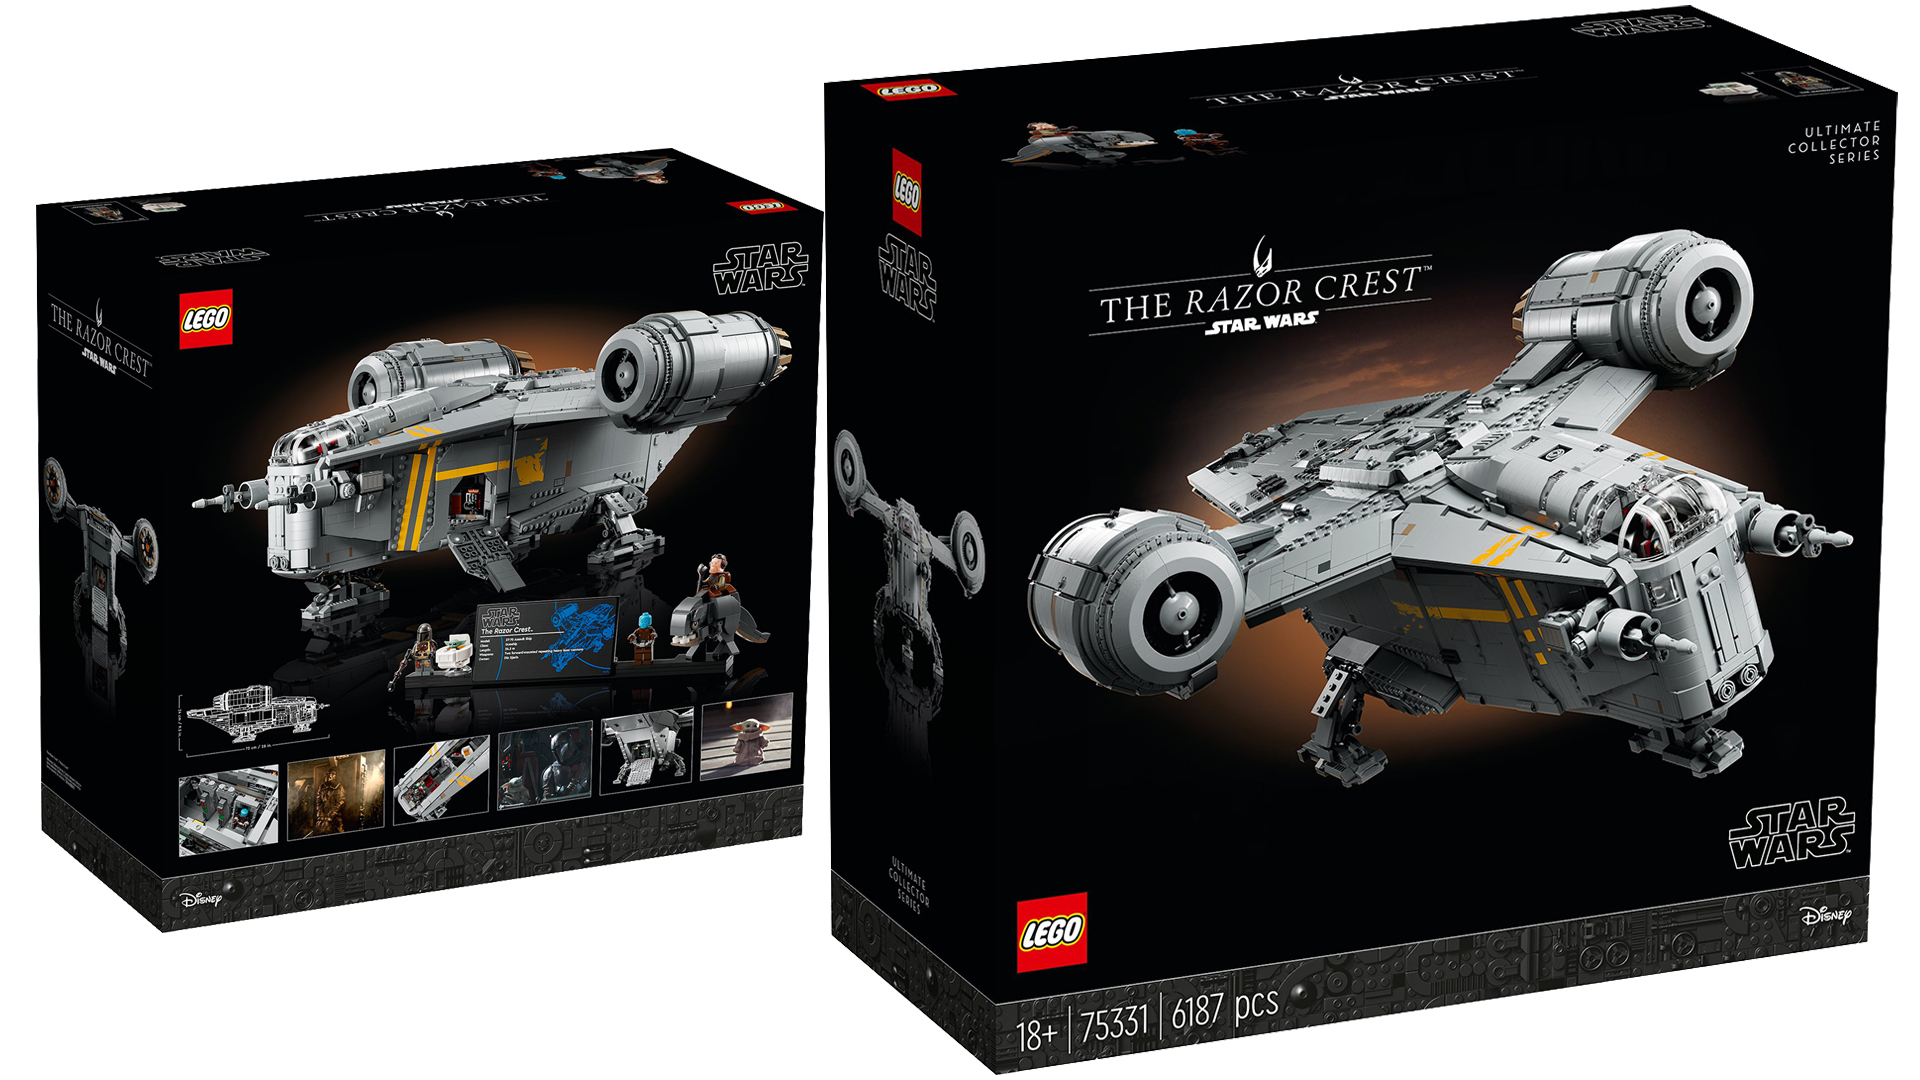 LEGO Star Wars UCS (75331) Razor Crest Set Revealed